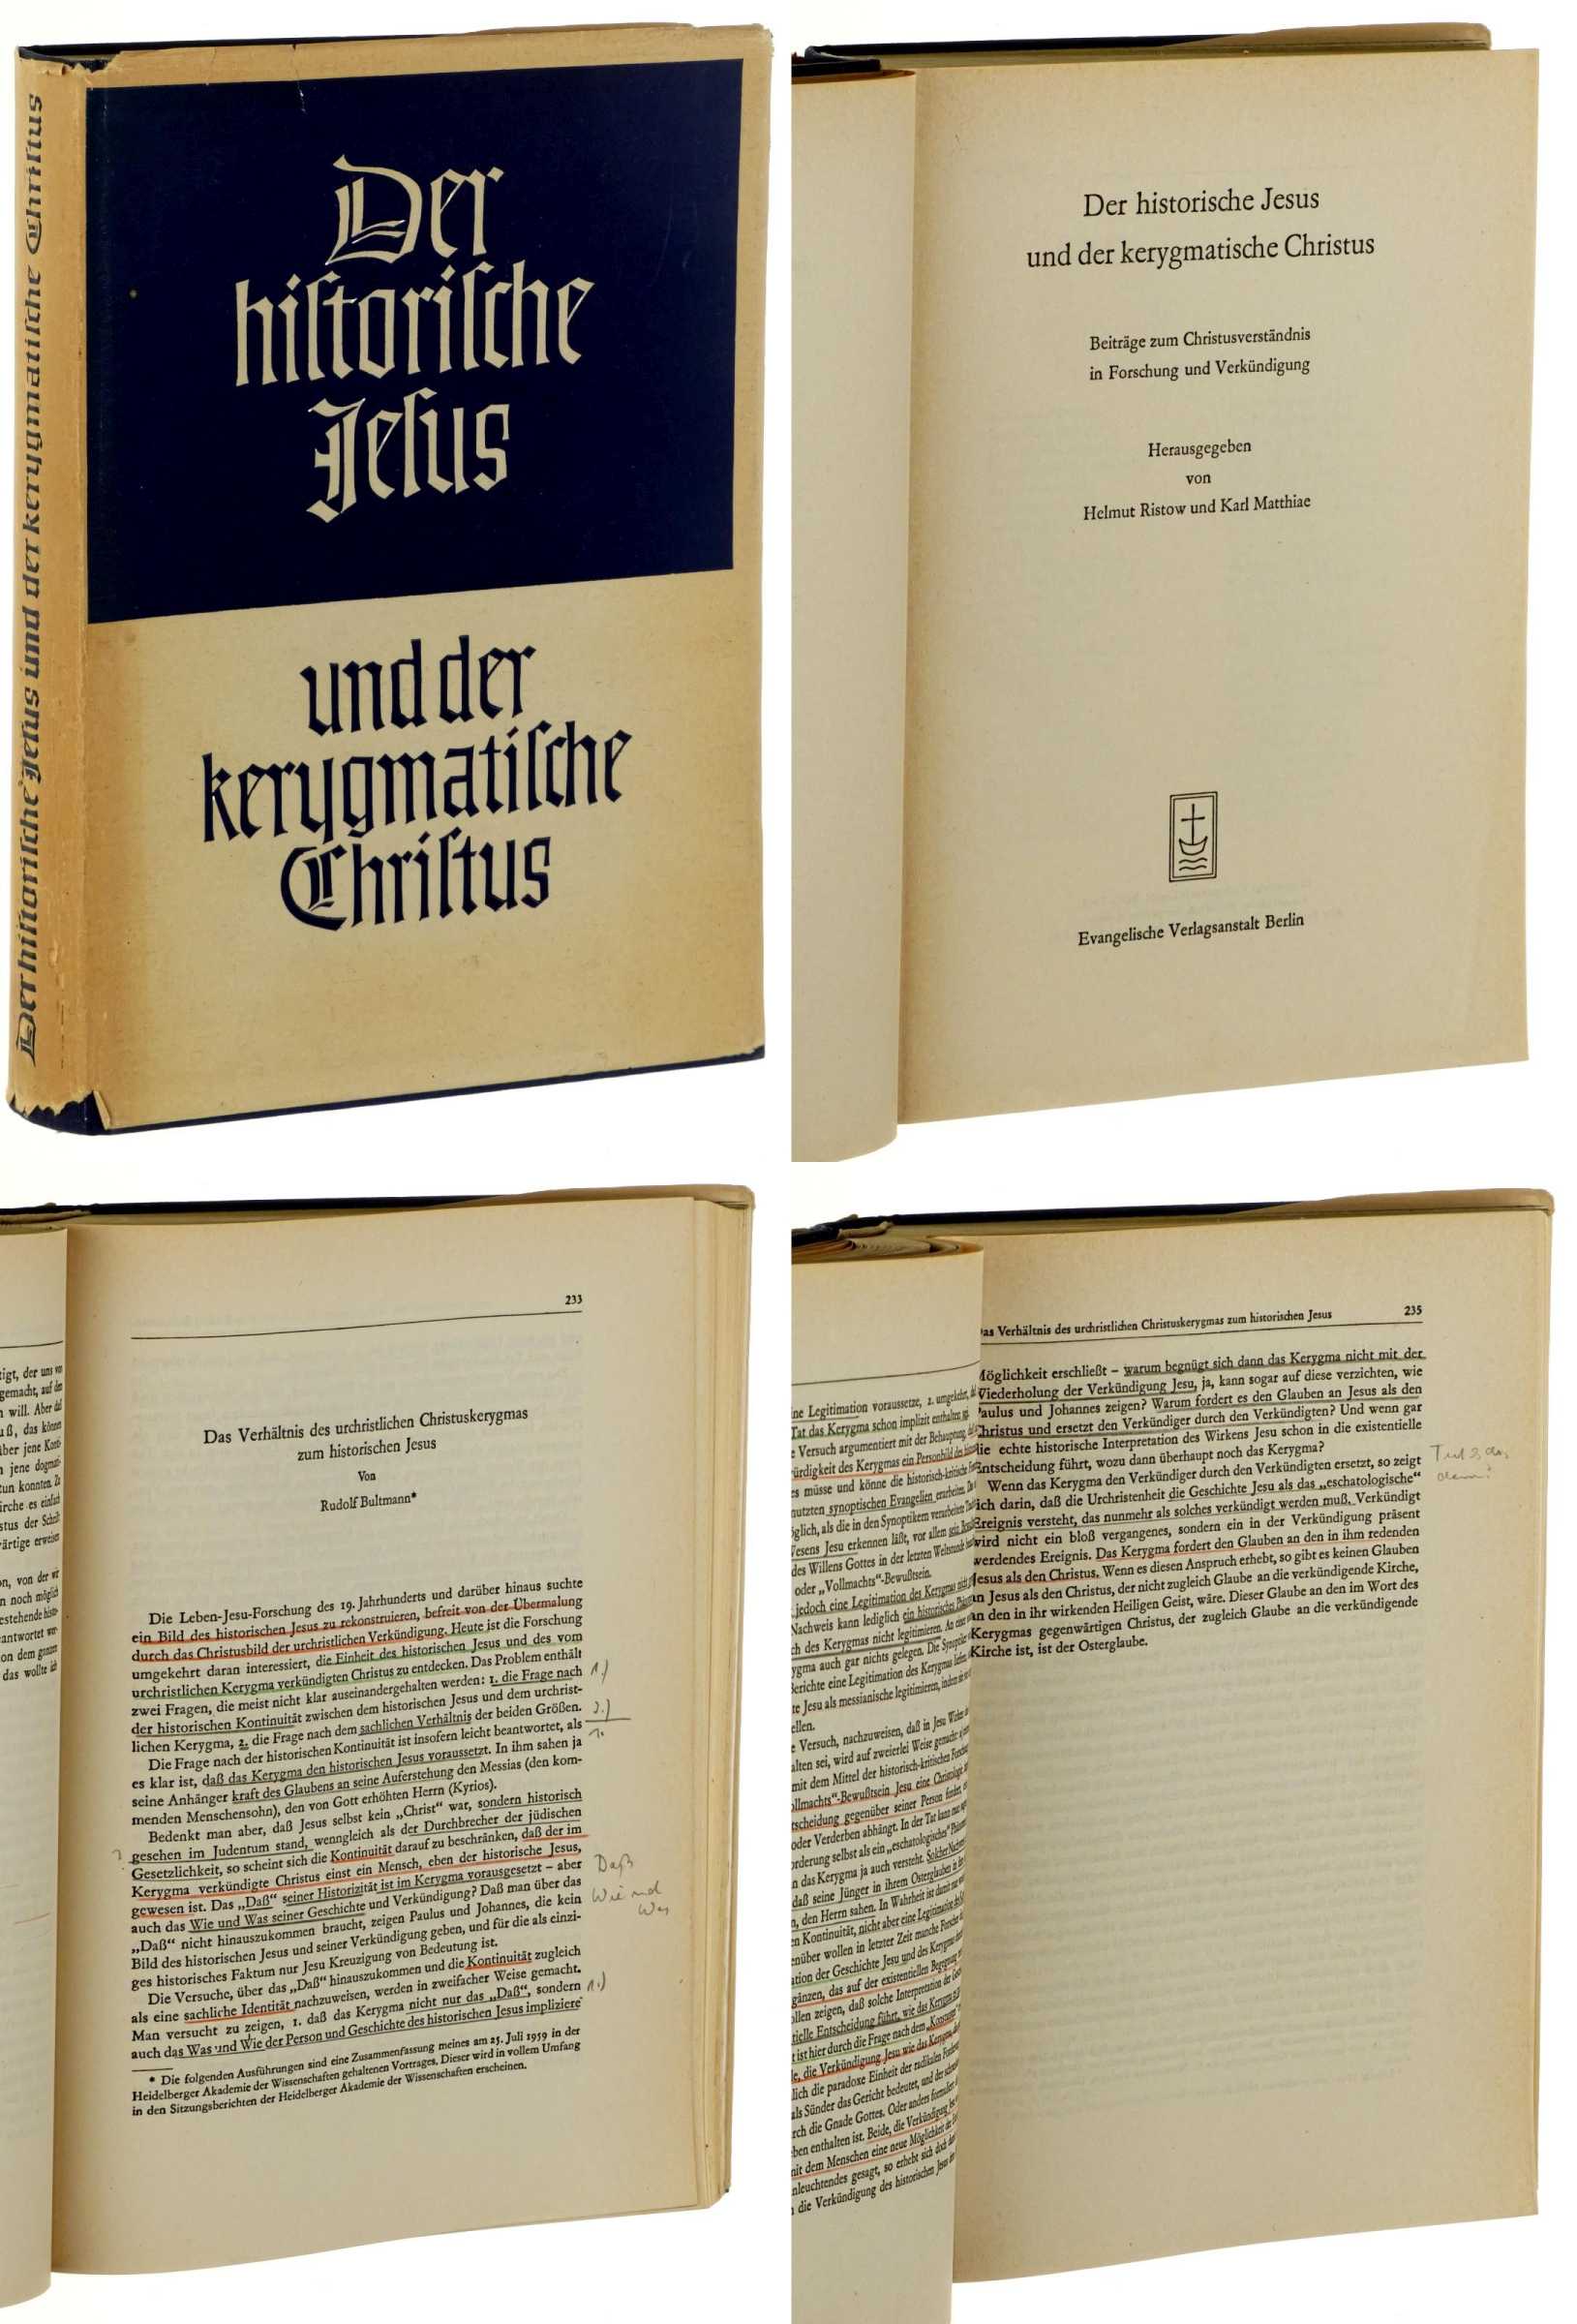   Der historische Jesus und der kerygmatische Christus. Beiträge zu Christusverständnis in Forschung und Verkündigung. Hrsg. von Helmut Ristow und Karl Matthiae. 